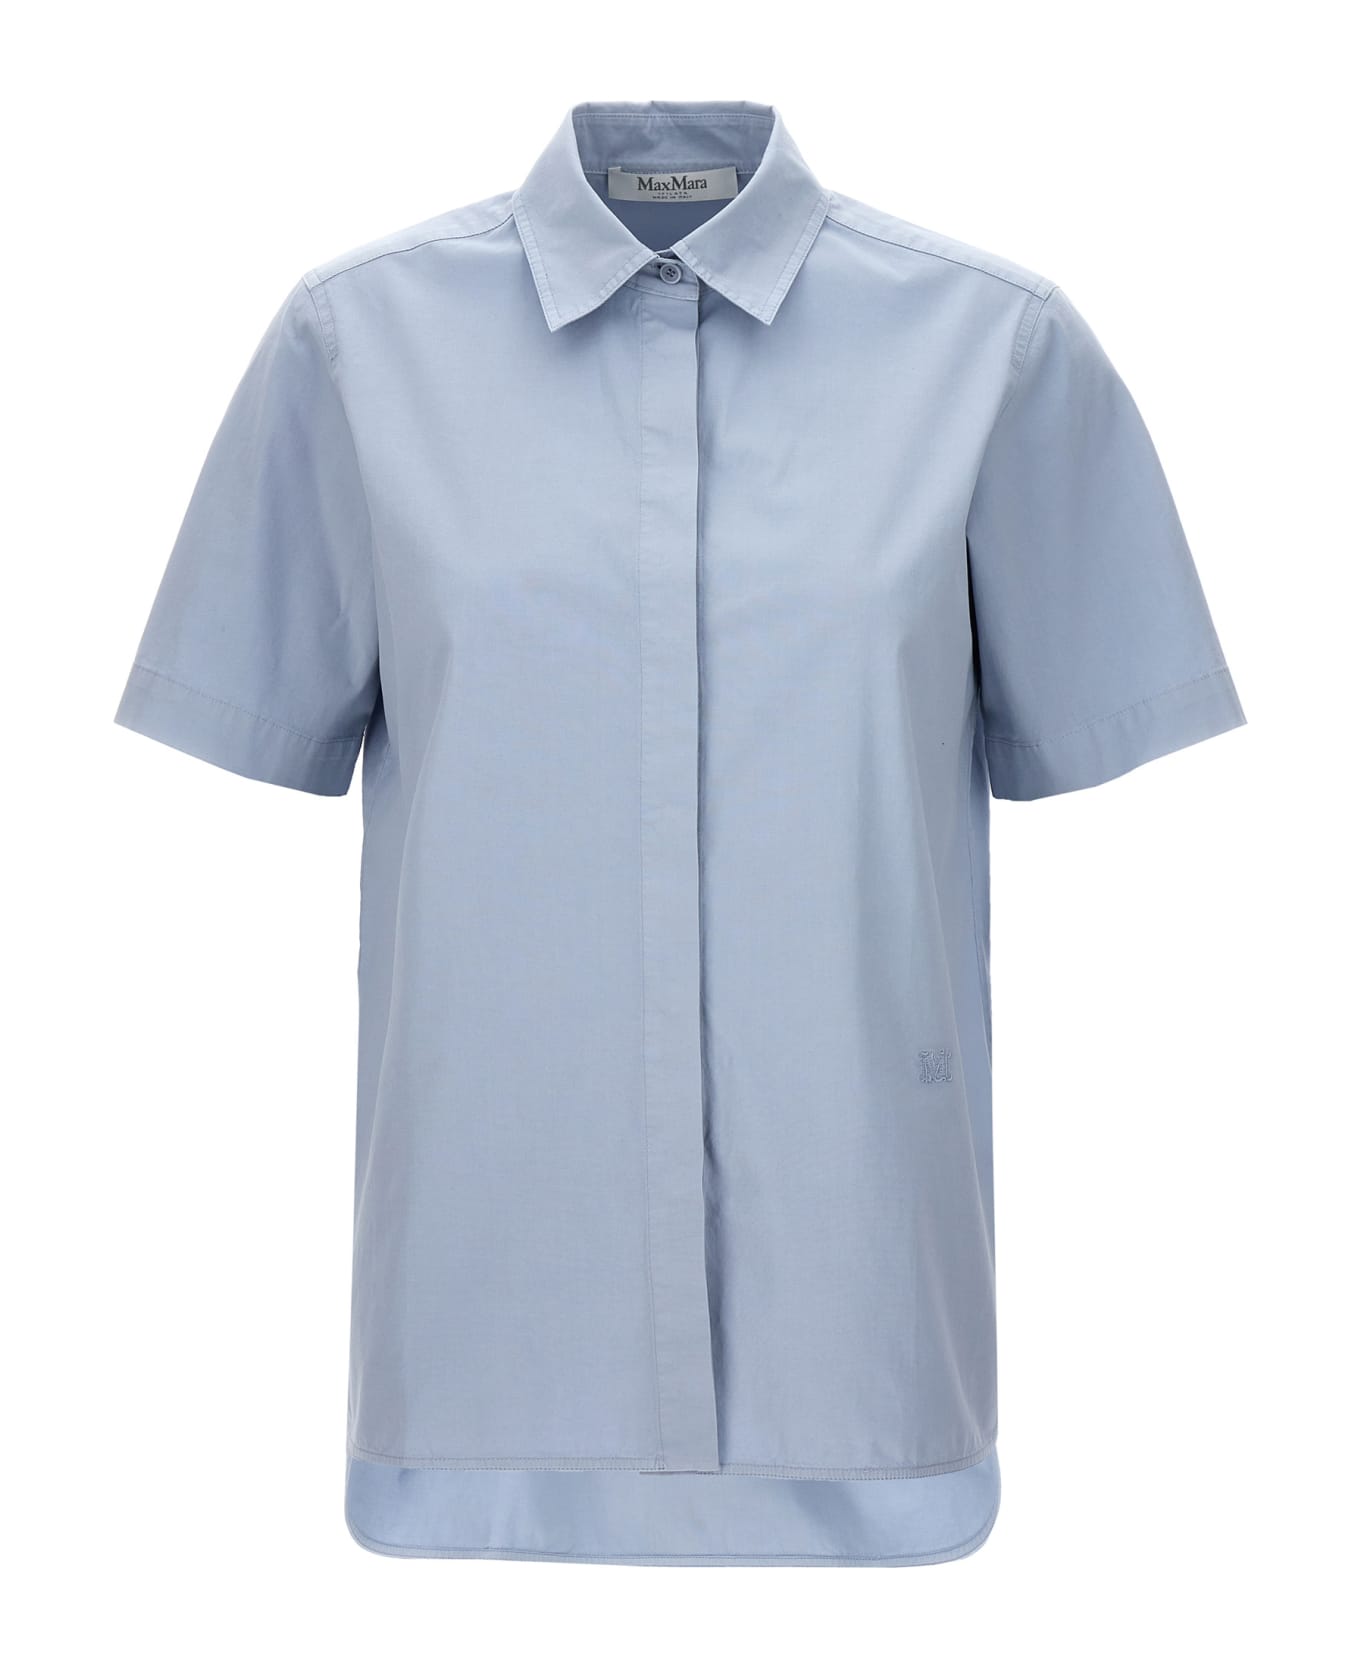 Max Mara 'adunco' Shirt - Light Blue